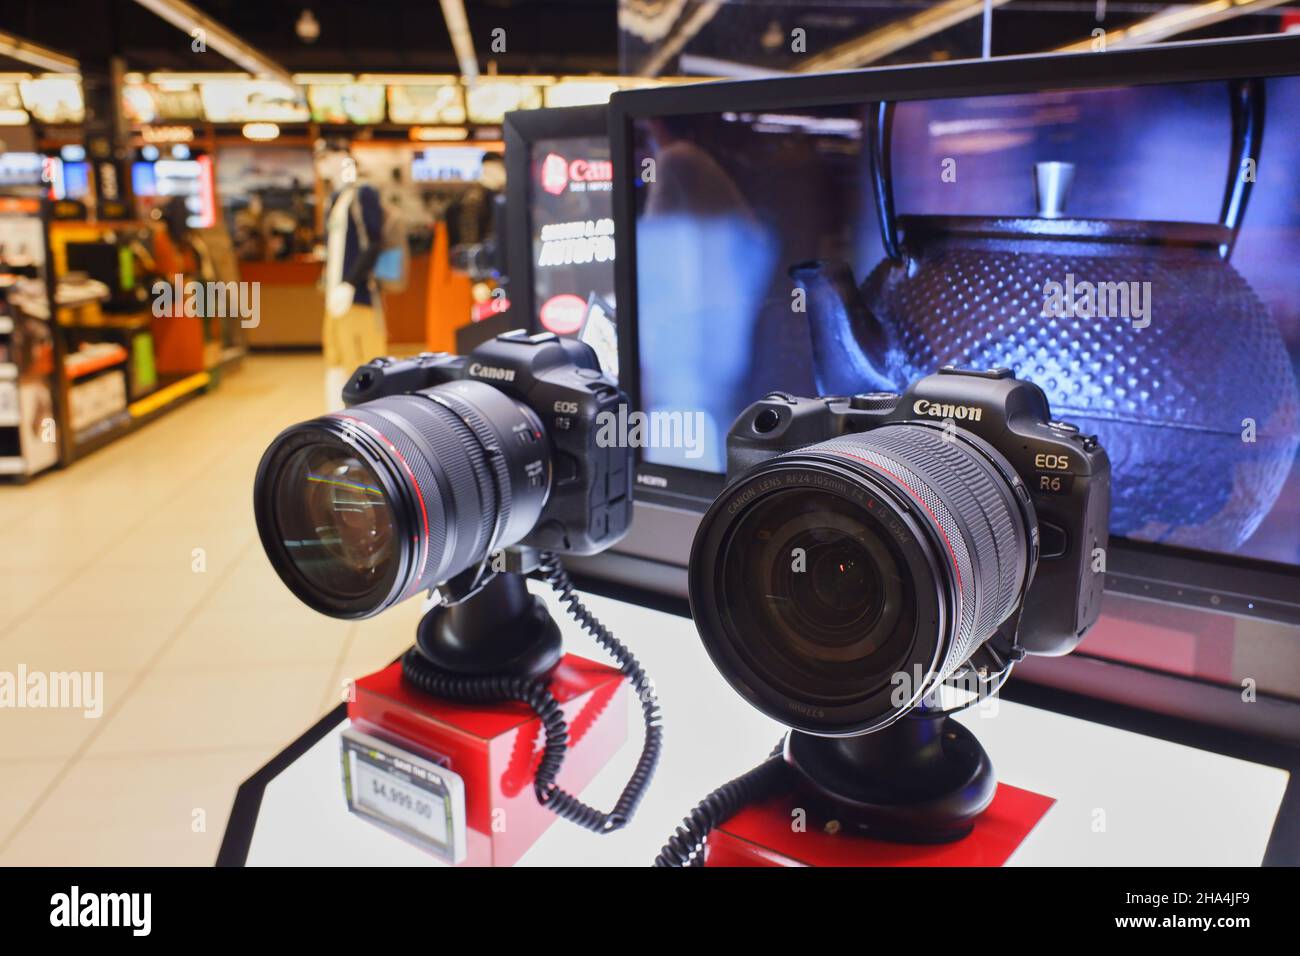 Las cámaras digitales sin espejo Canon EOS R5 y R6 muestran en B&H Photo Video - Tienda electrónica y cámaras.Manhattan.Nueva York.Nueva York.EE.UU Fotografía de stock Alamy